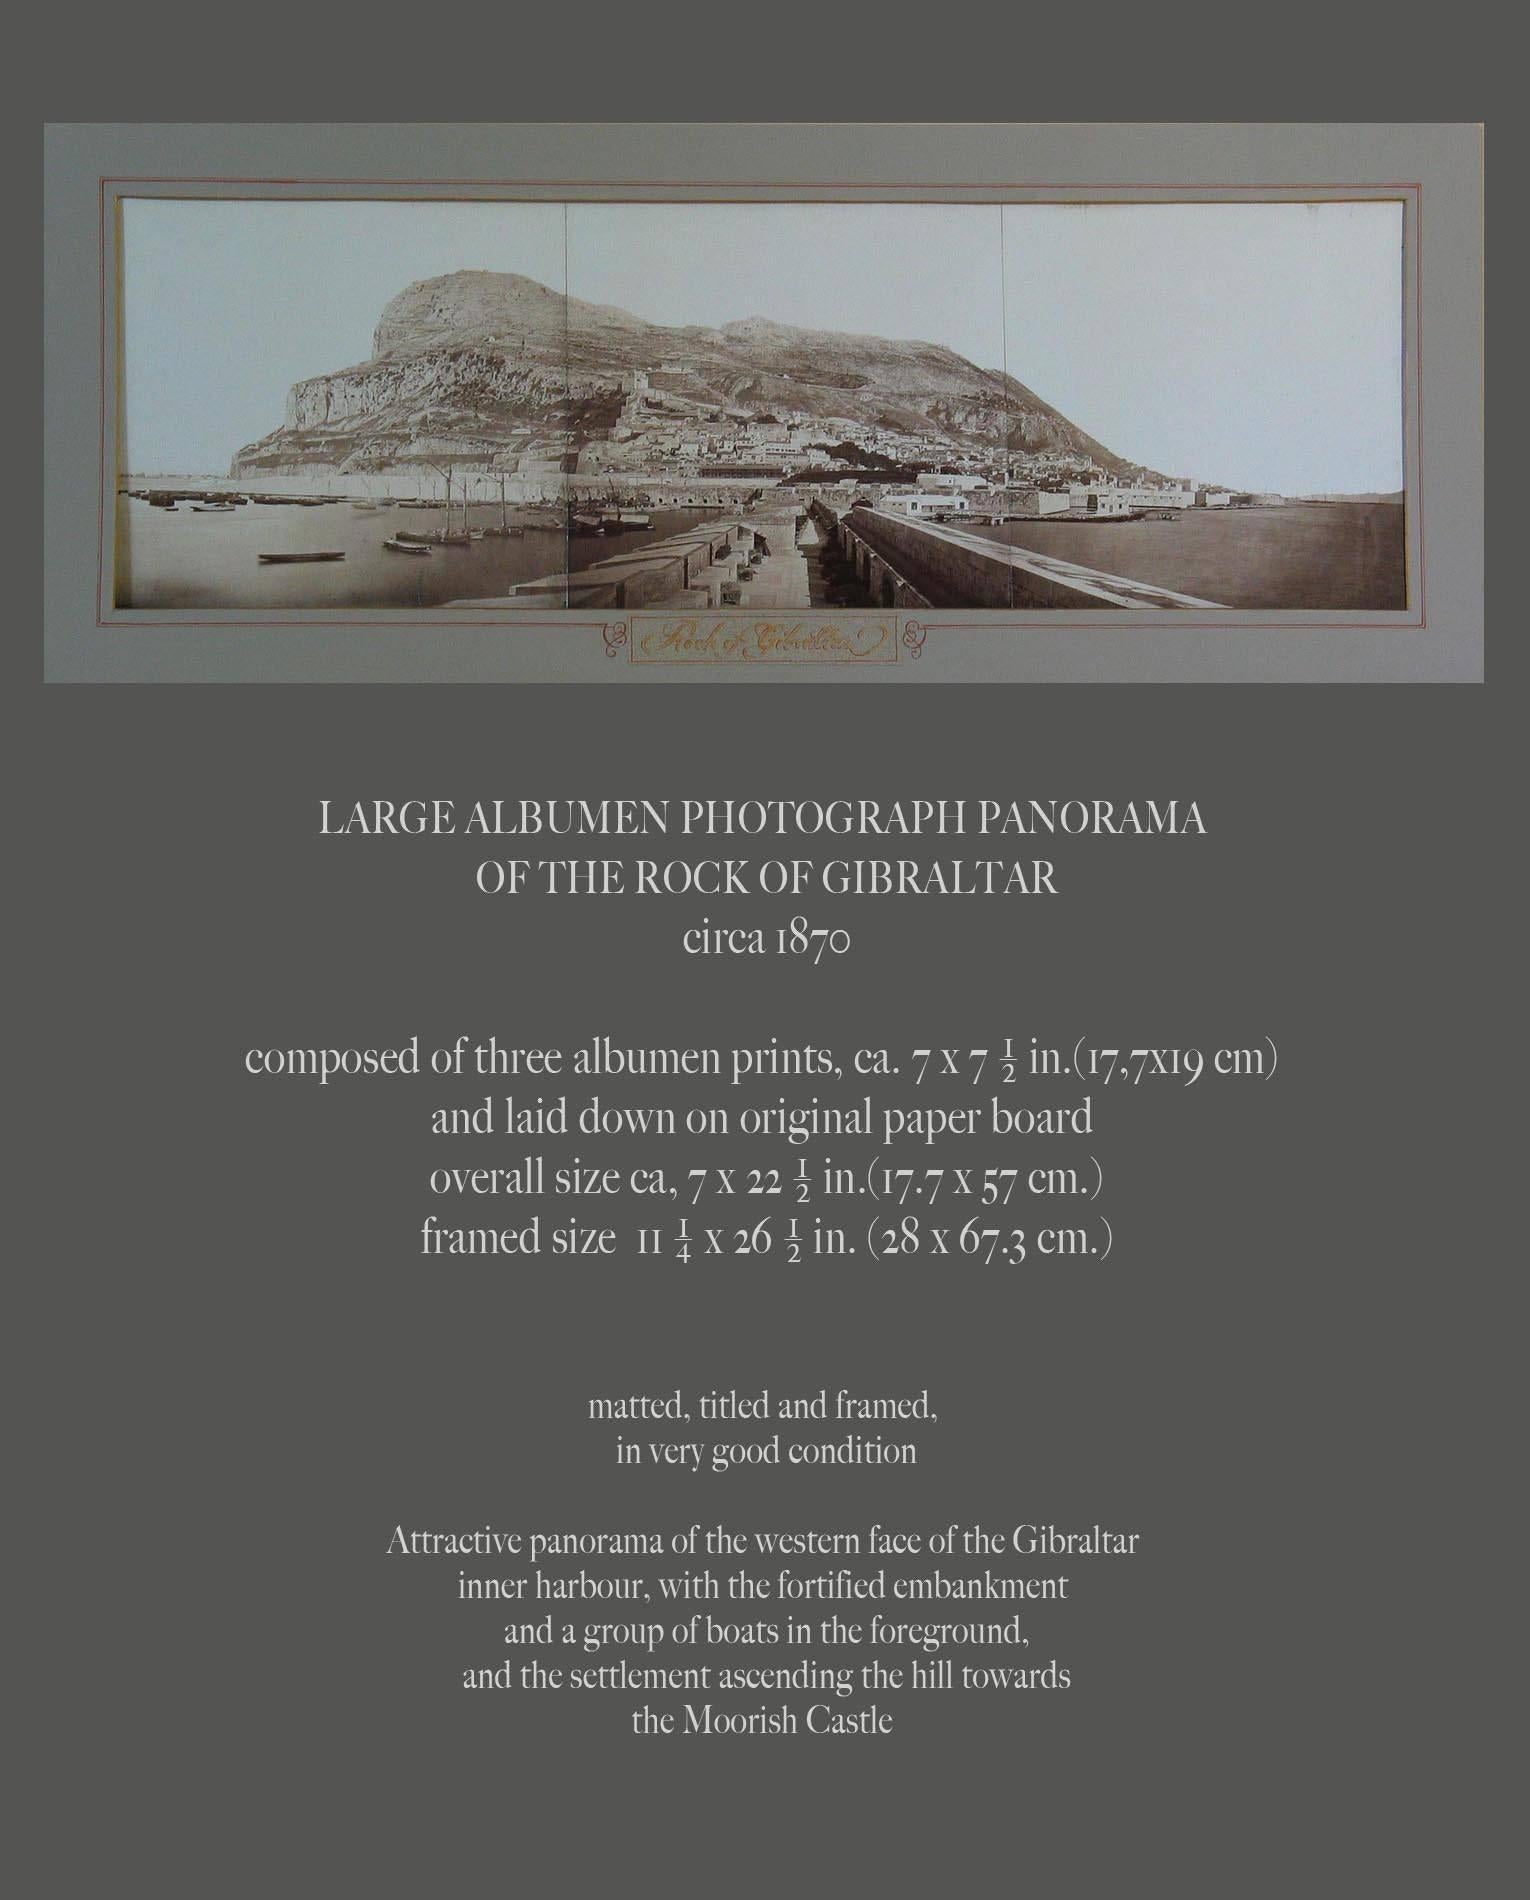 Grande photographie sur papier albuminé Panorama du rocher de Gibraltar, vers 1870,
Composé de trois tirages à l'albumine, d'environ 7 pouces x 7 1/2 pouces chacun, et posé sur du carton d'origine, taille totale 7 pouces x 22 1/2 pouces, taille